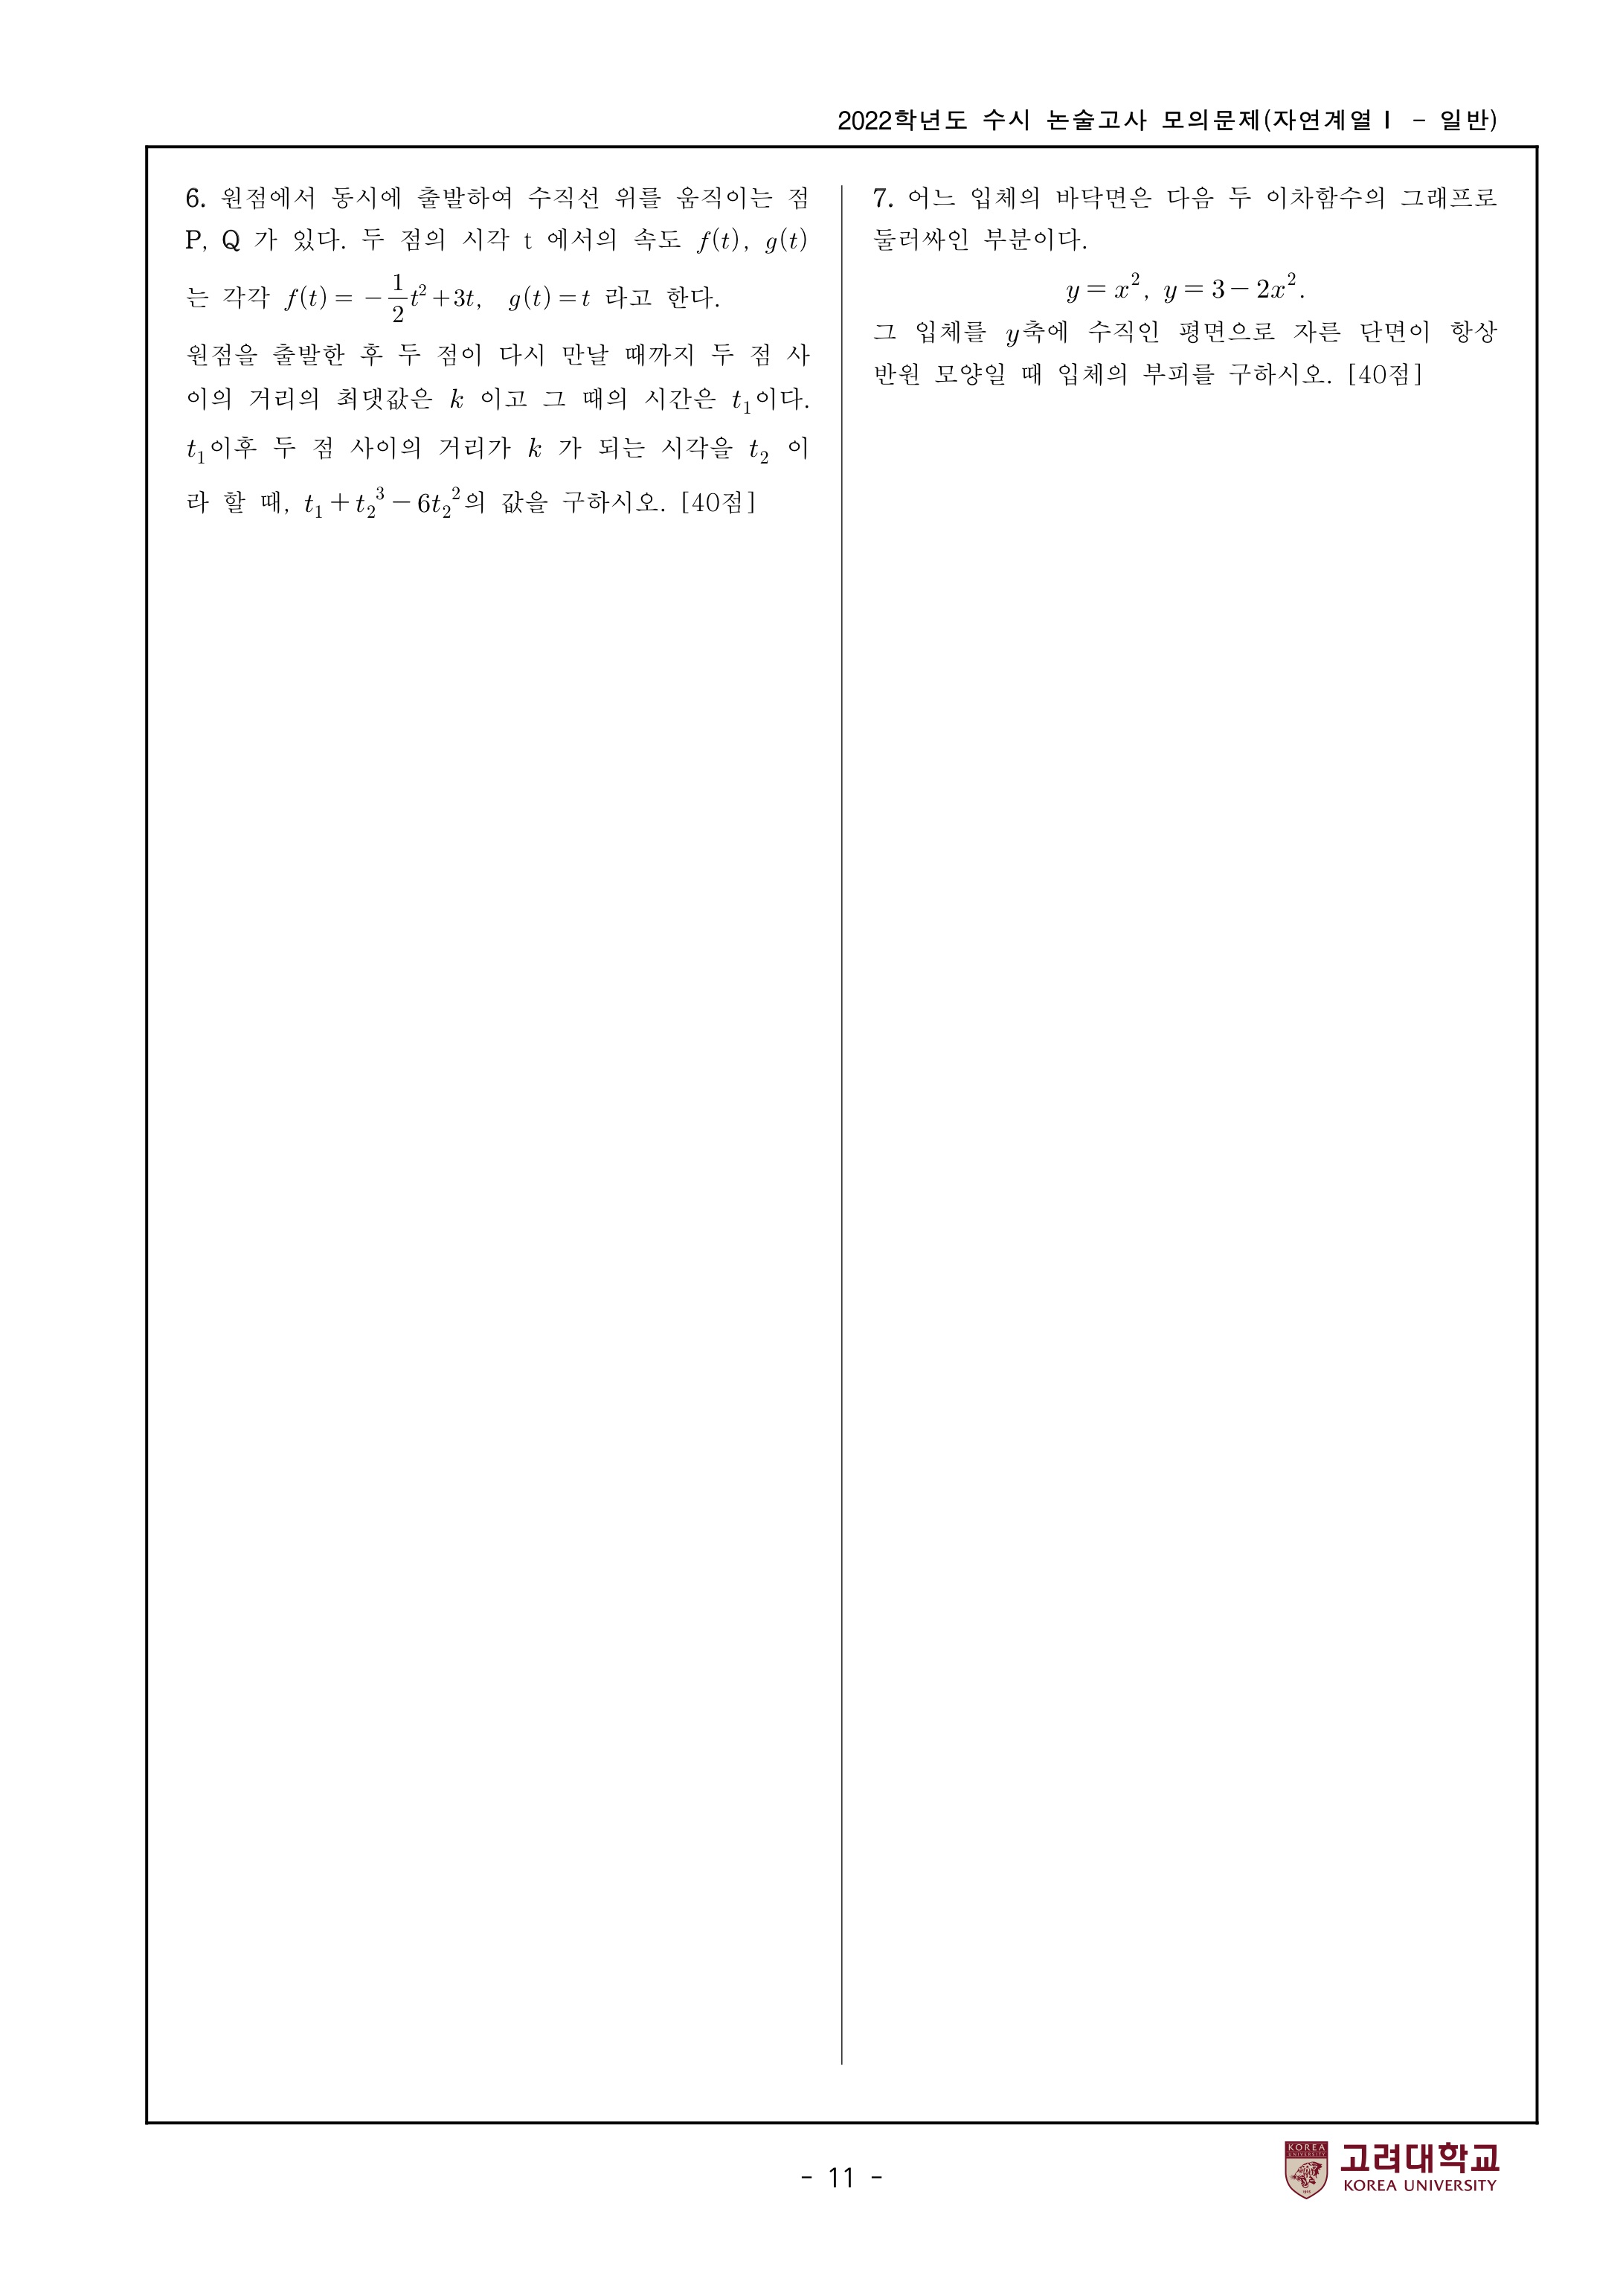 2022학년도-고려대학교-세종캠퍼스-논술고사-모의문제-자연계열Ⅰ-4